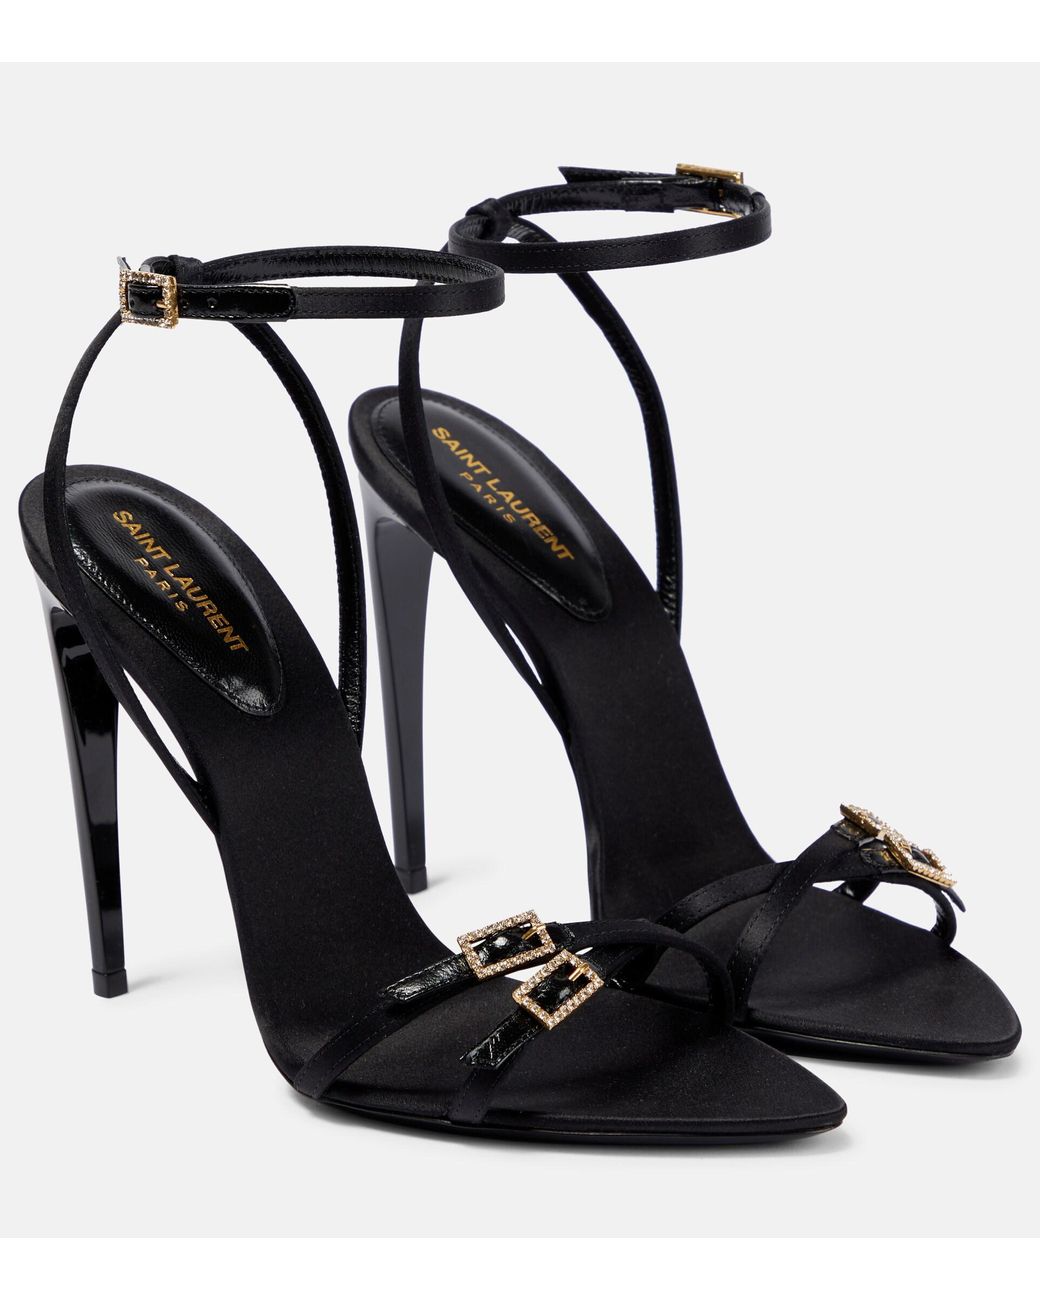 Venue 105 Crystal Embellished Sandals in Black  Saint Laurent  Mytheresa